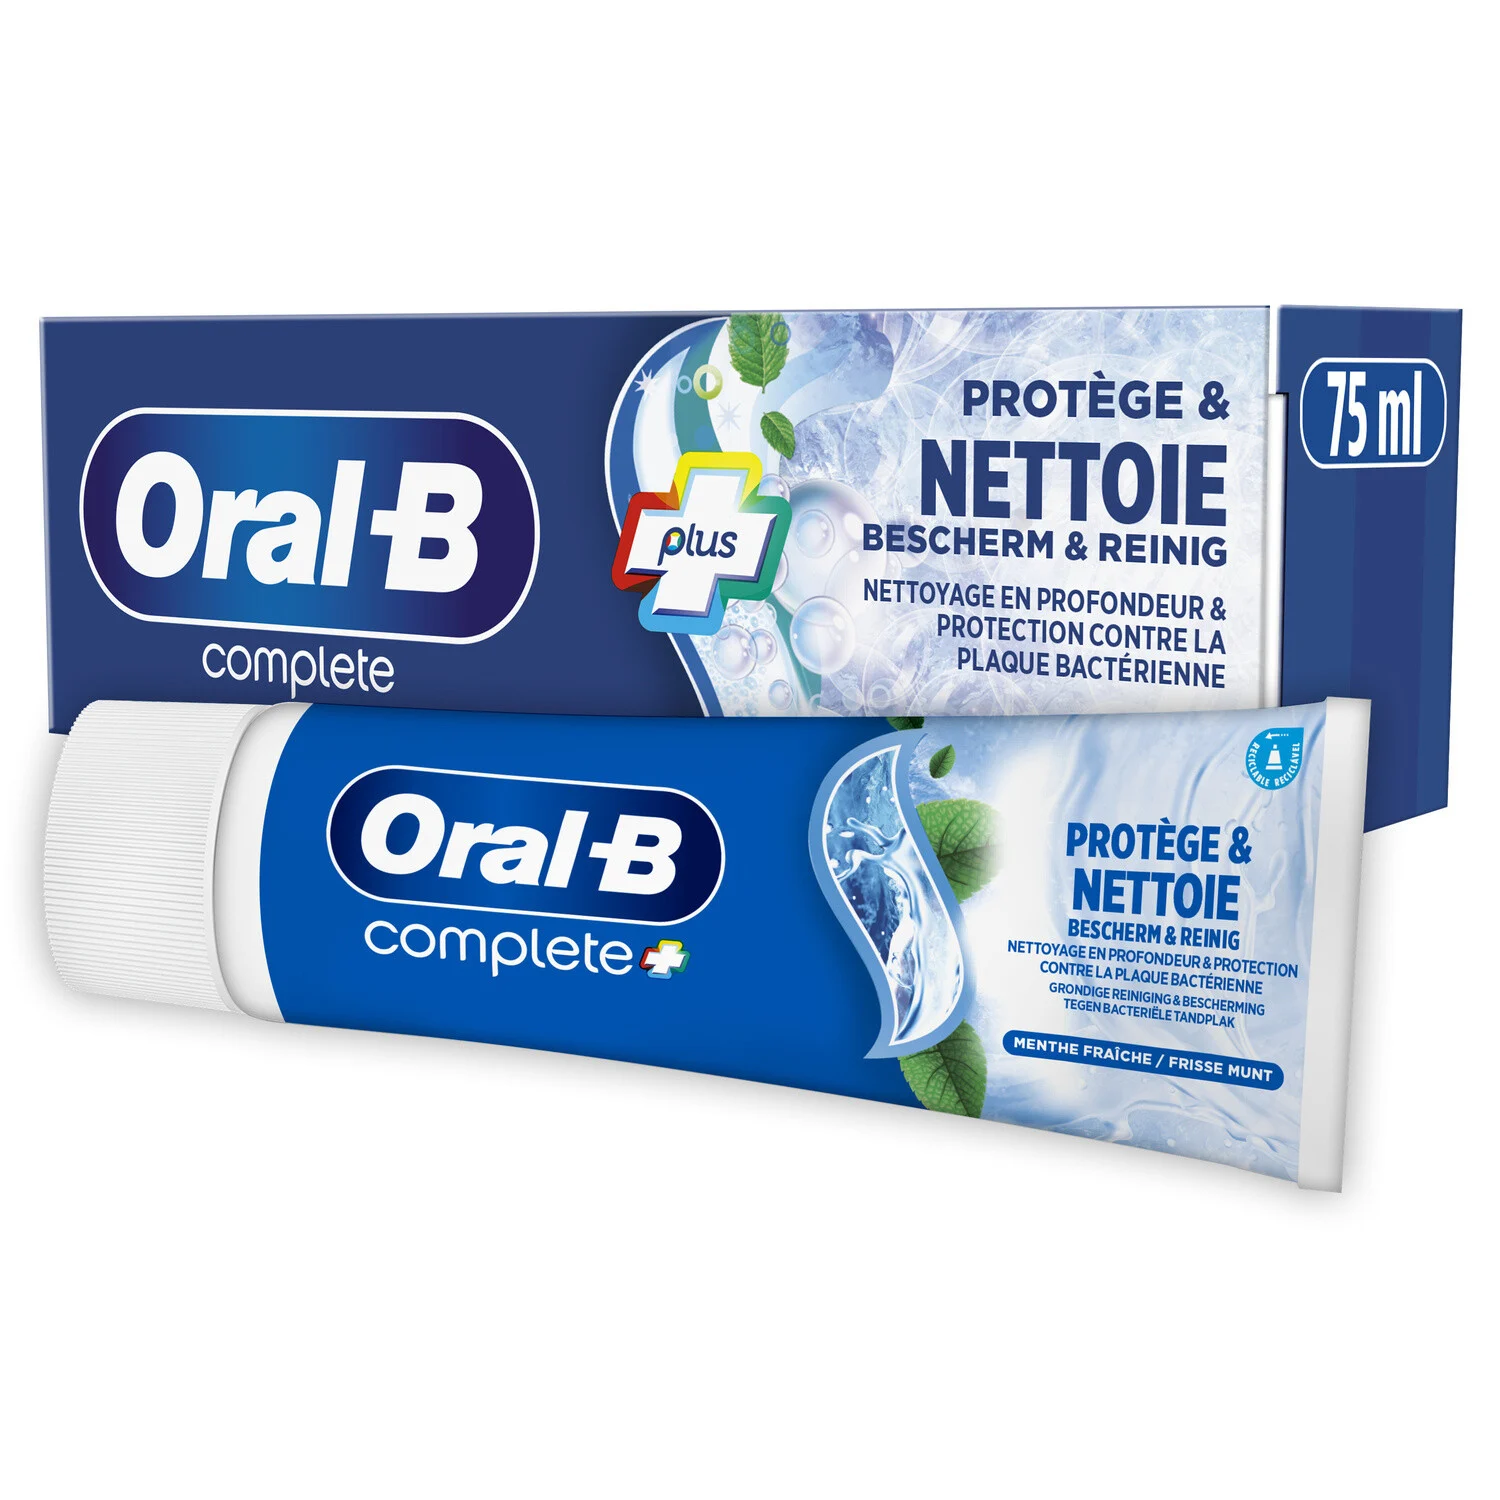 75 毫升 Oral B Dent Protege Net